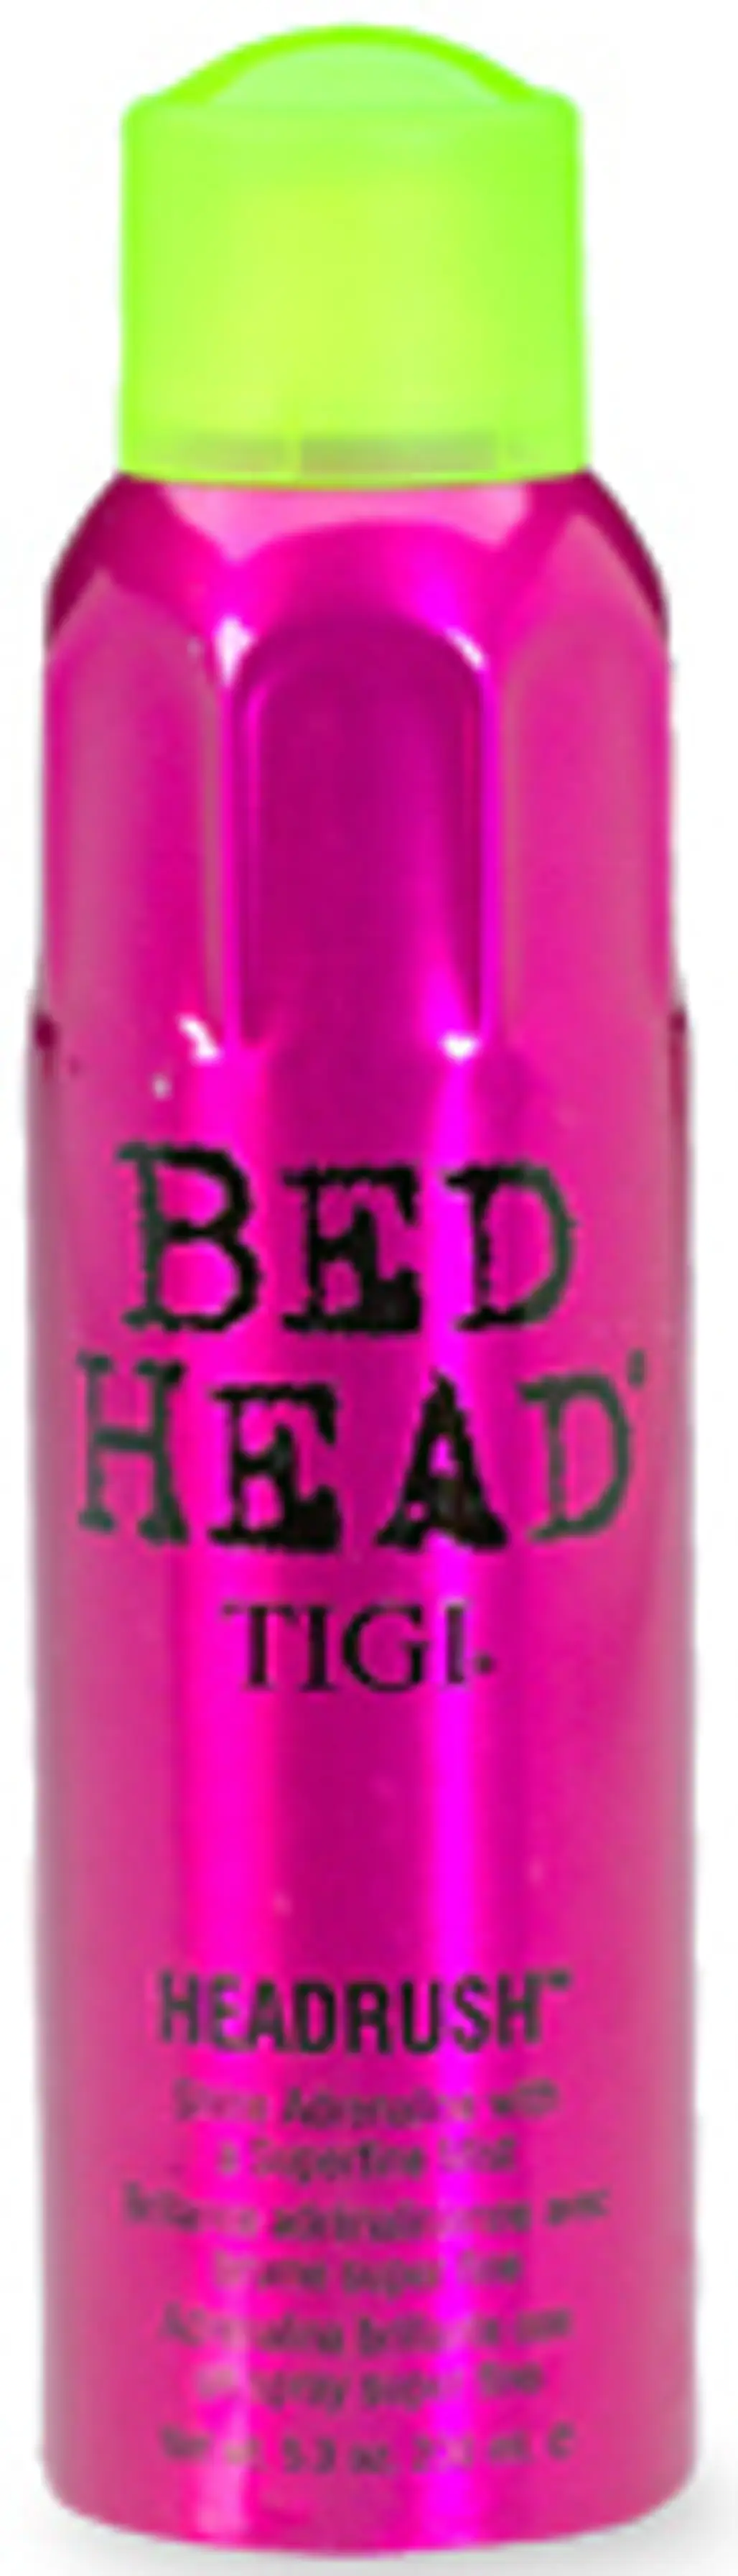 Tigi Bed Head Headrush Shine Adrenaline